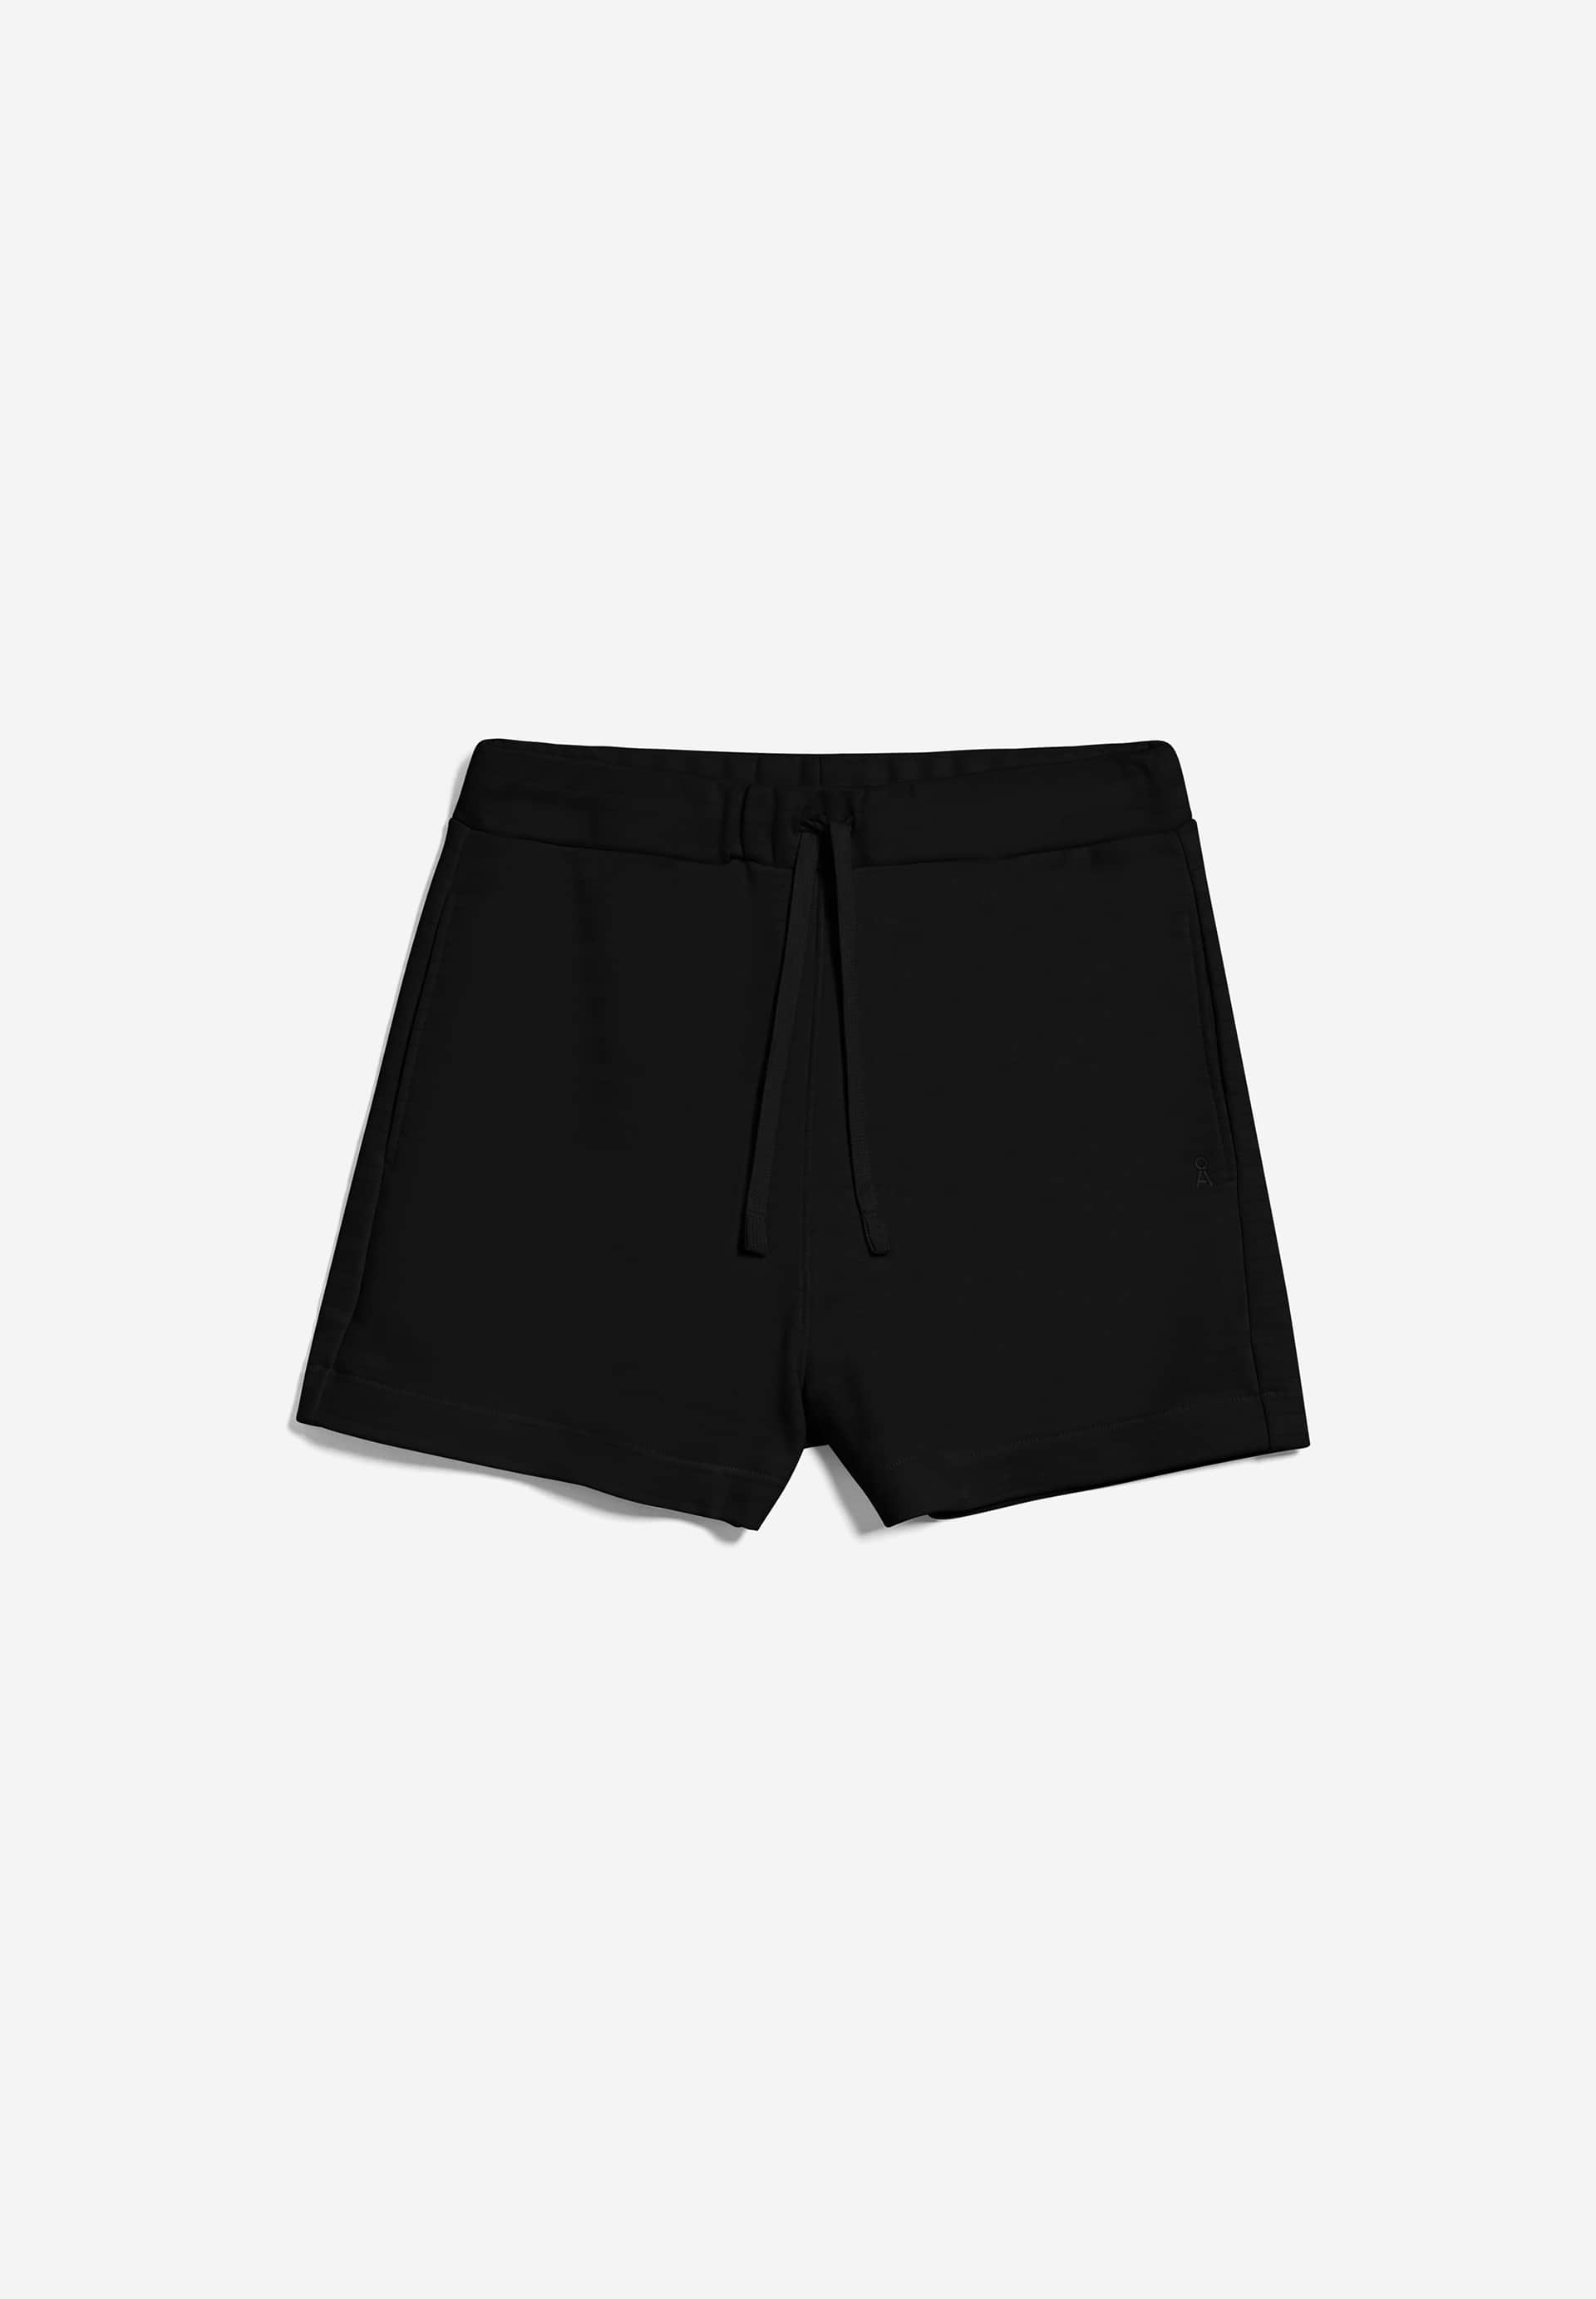 ZIRAA Sweat Shorts Oversized Fit made of Organic Cotton